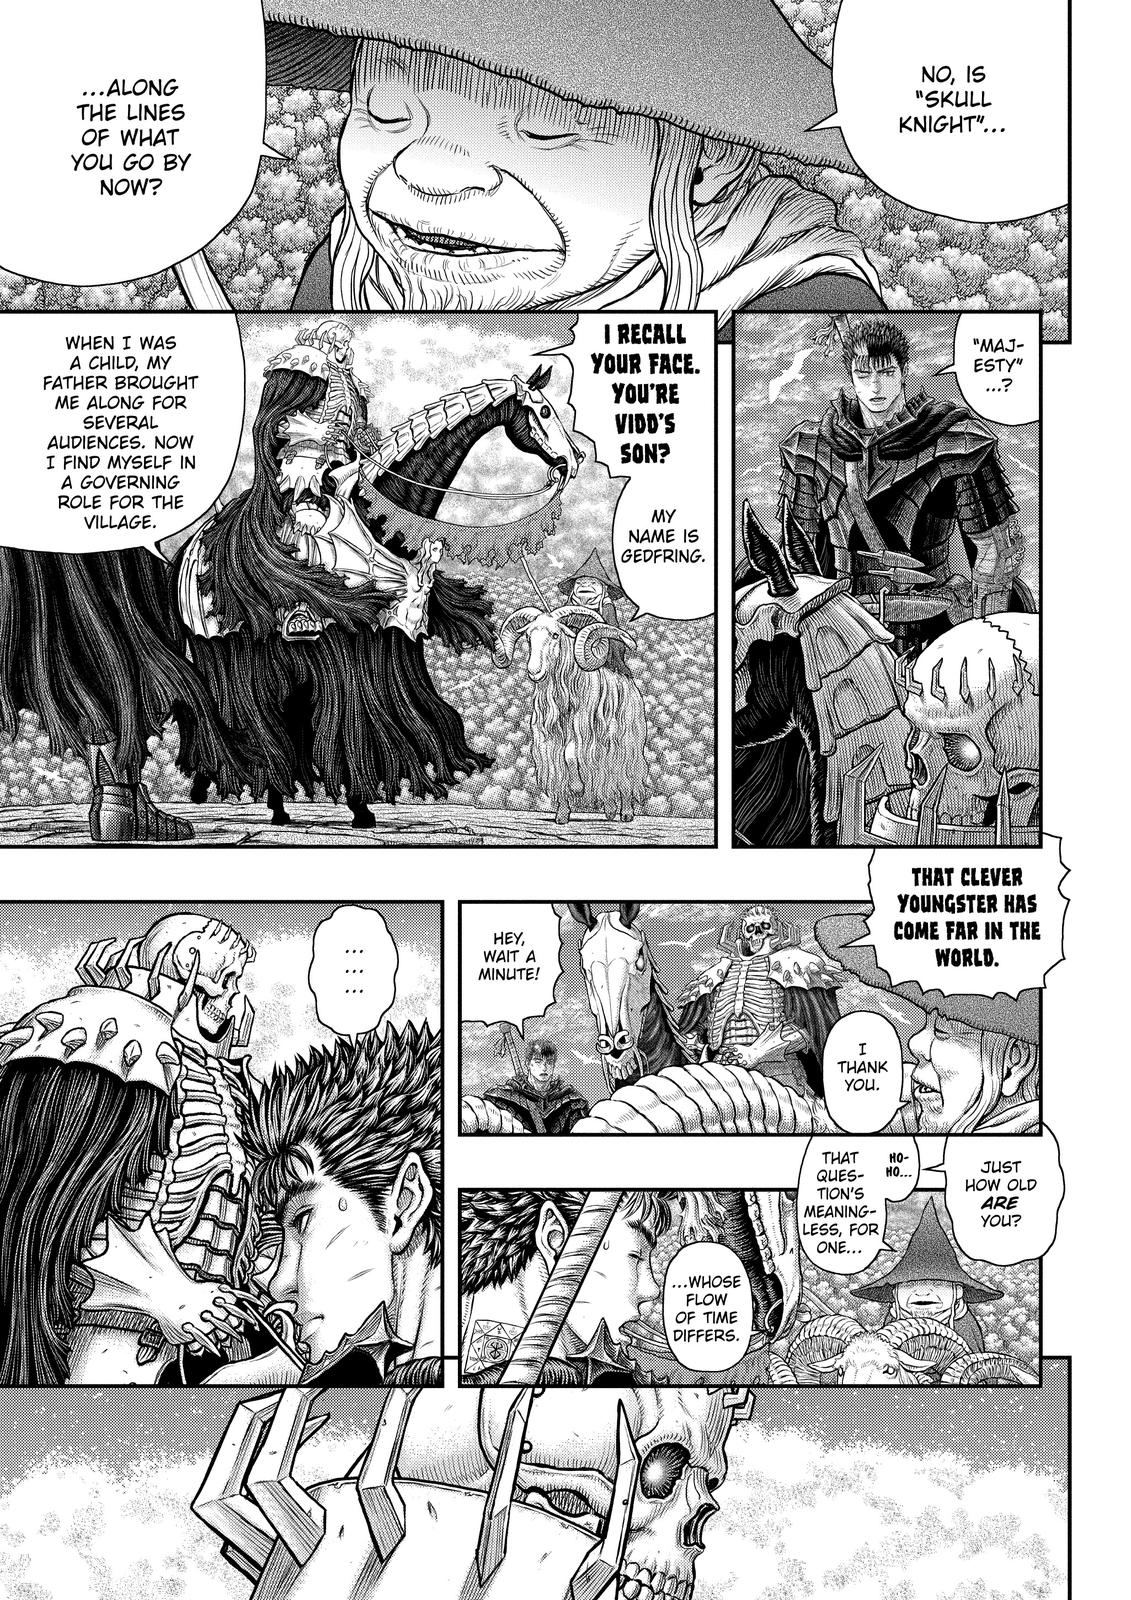 Berserk Manga Chapter 361 image 03